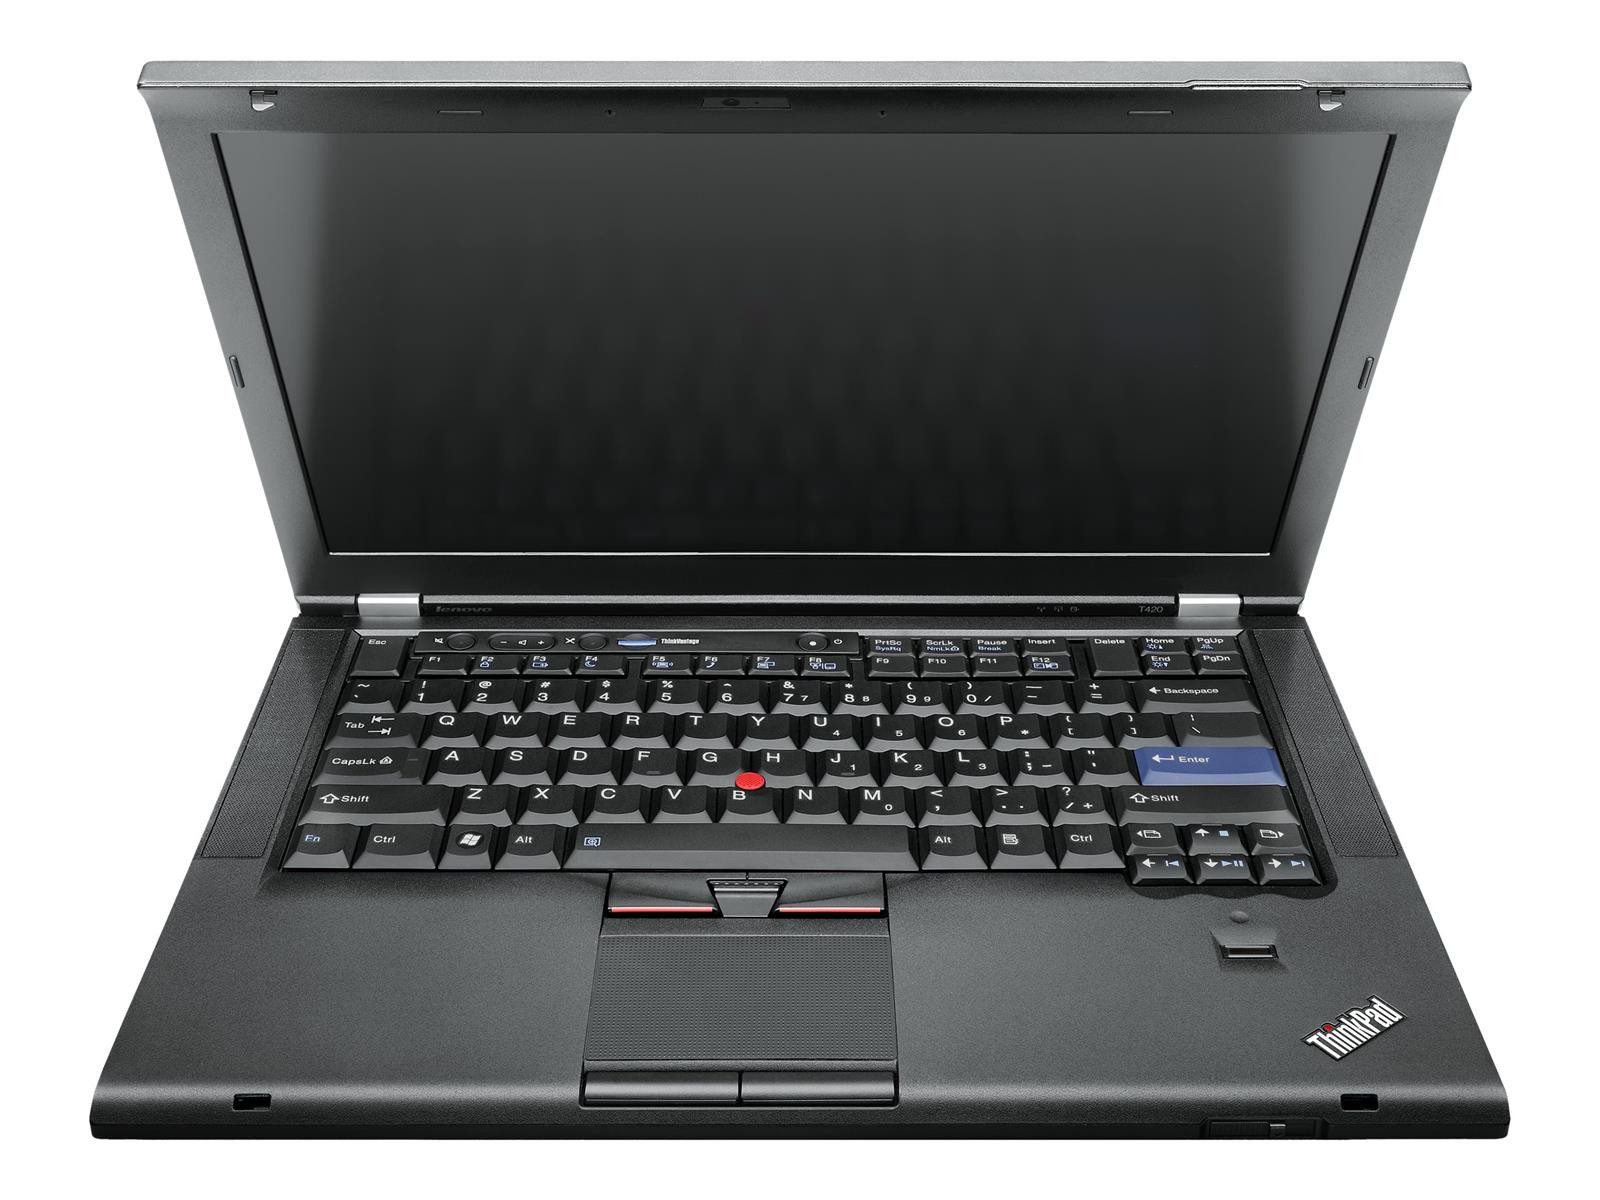 Lenovo ThinkPad T420 i5-2520M 2,50GHz 4GB RAM 320GB HDD WWAN W10Pro